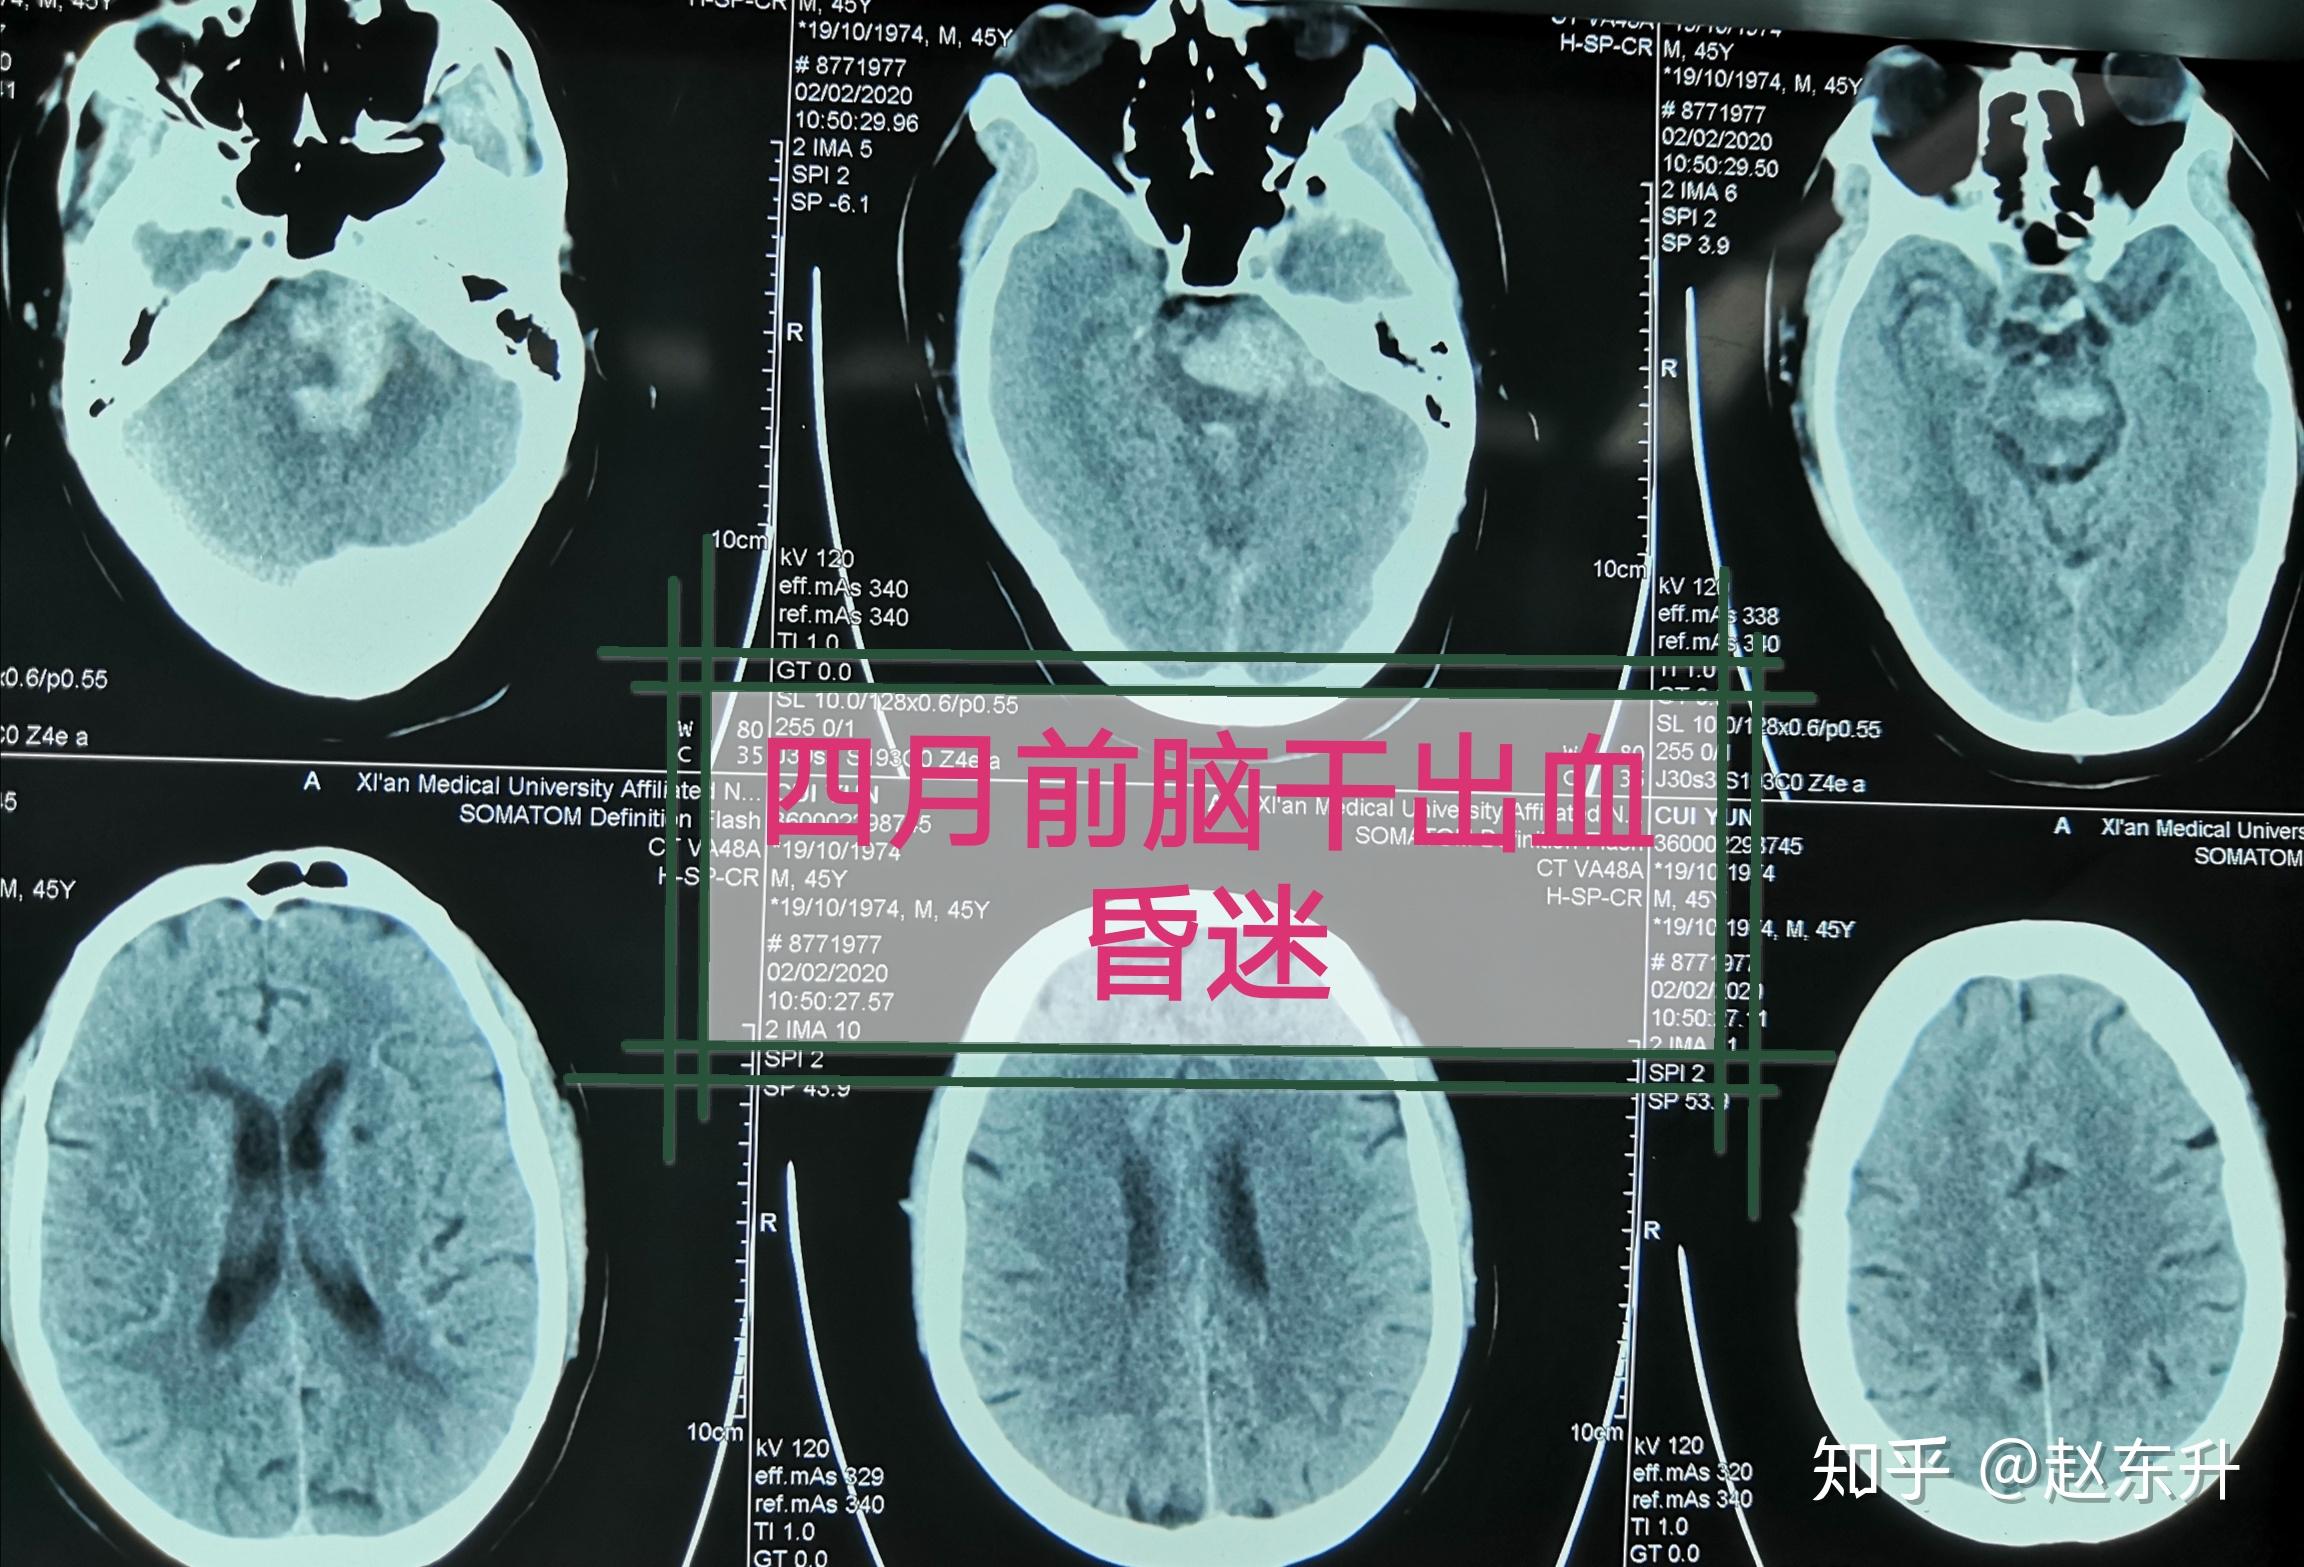 【疾病百科】放射性脑干损伤——早发现早治疗 - 脑医汇 - 神外资讯 - 神介资讯